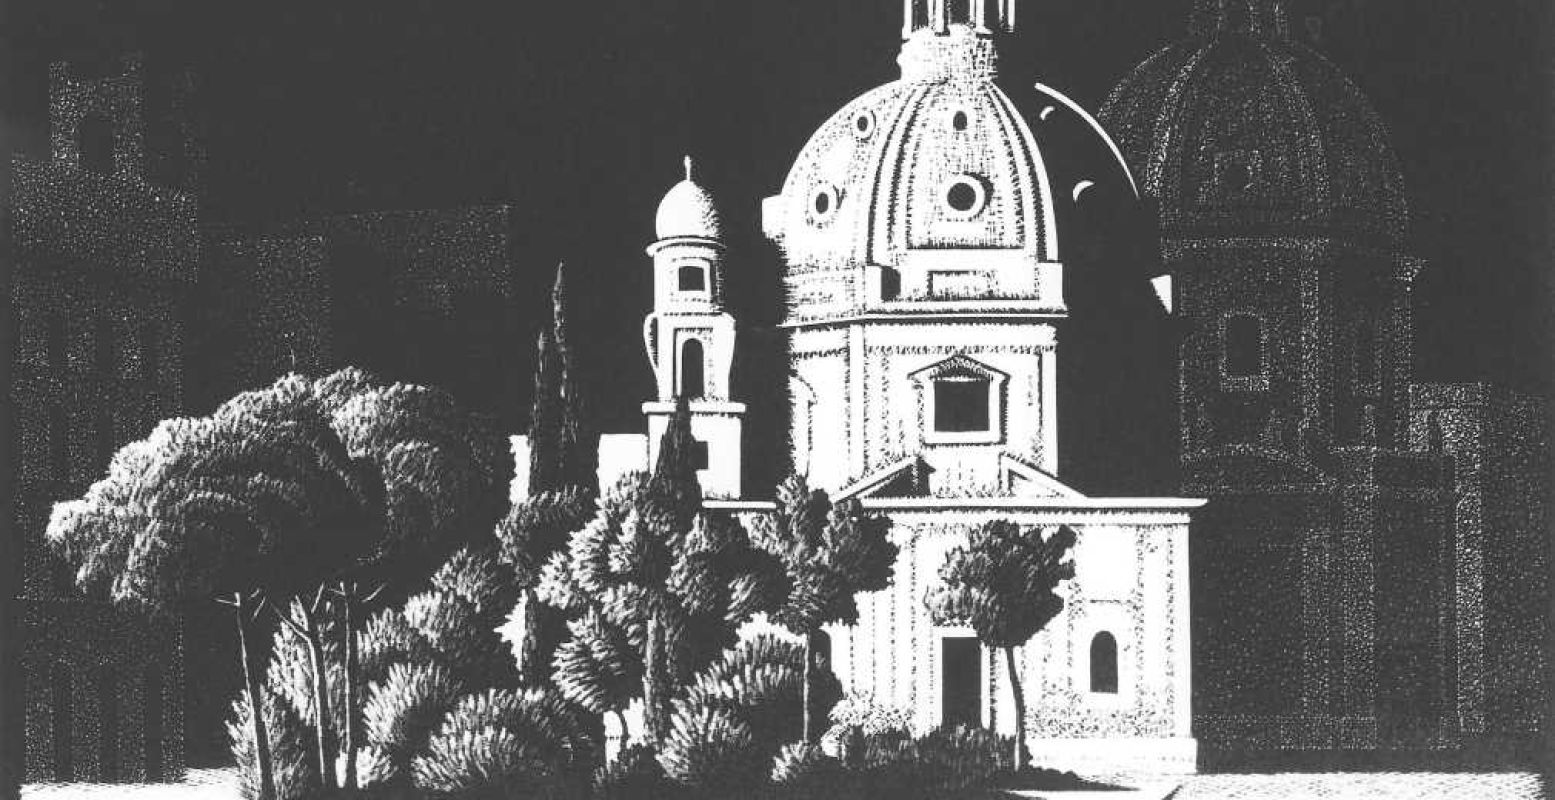 Foto: Nachtelijk Rome - Kerkjes, Piazza Venezia (1934), M.C. Escher © the M.C. Escher Company B.V. All rights reserved. www.mcescher.com